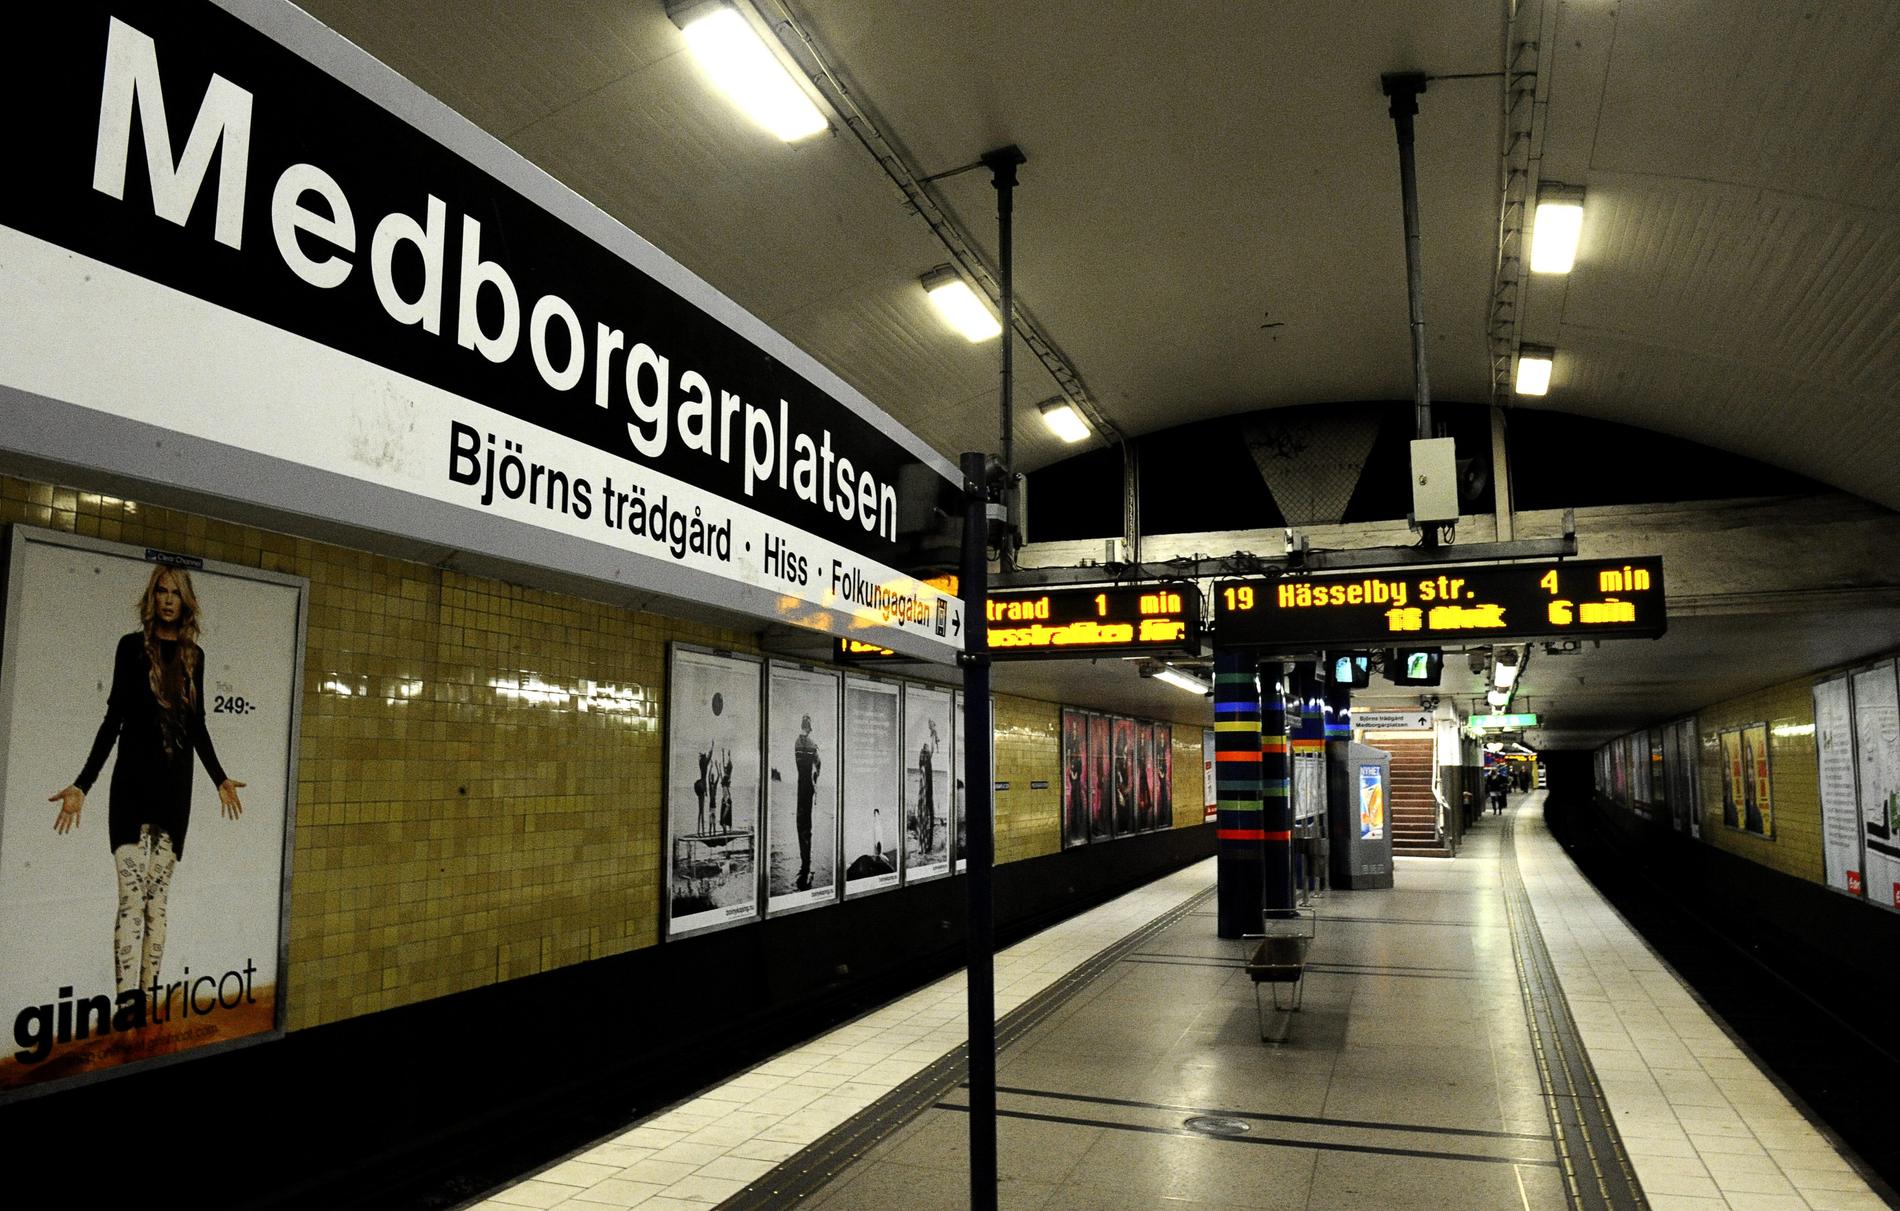 Medborgarplatsens tunnelbanestation i Stockholm.